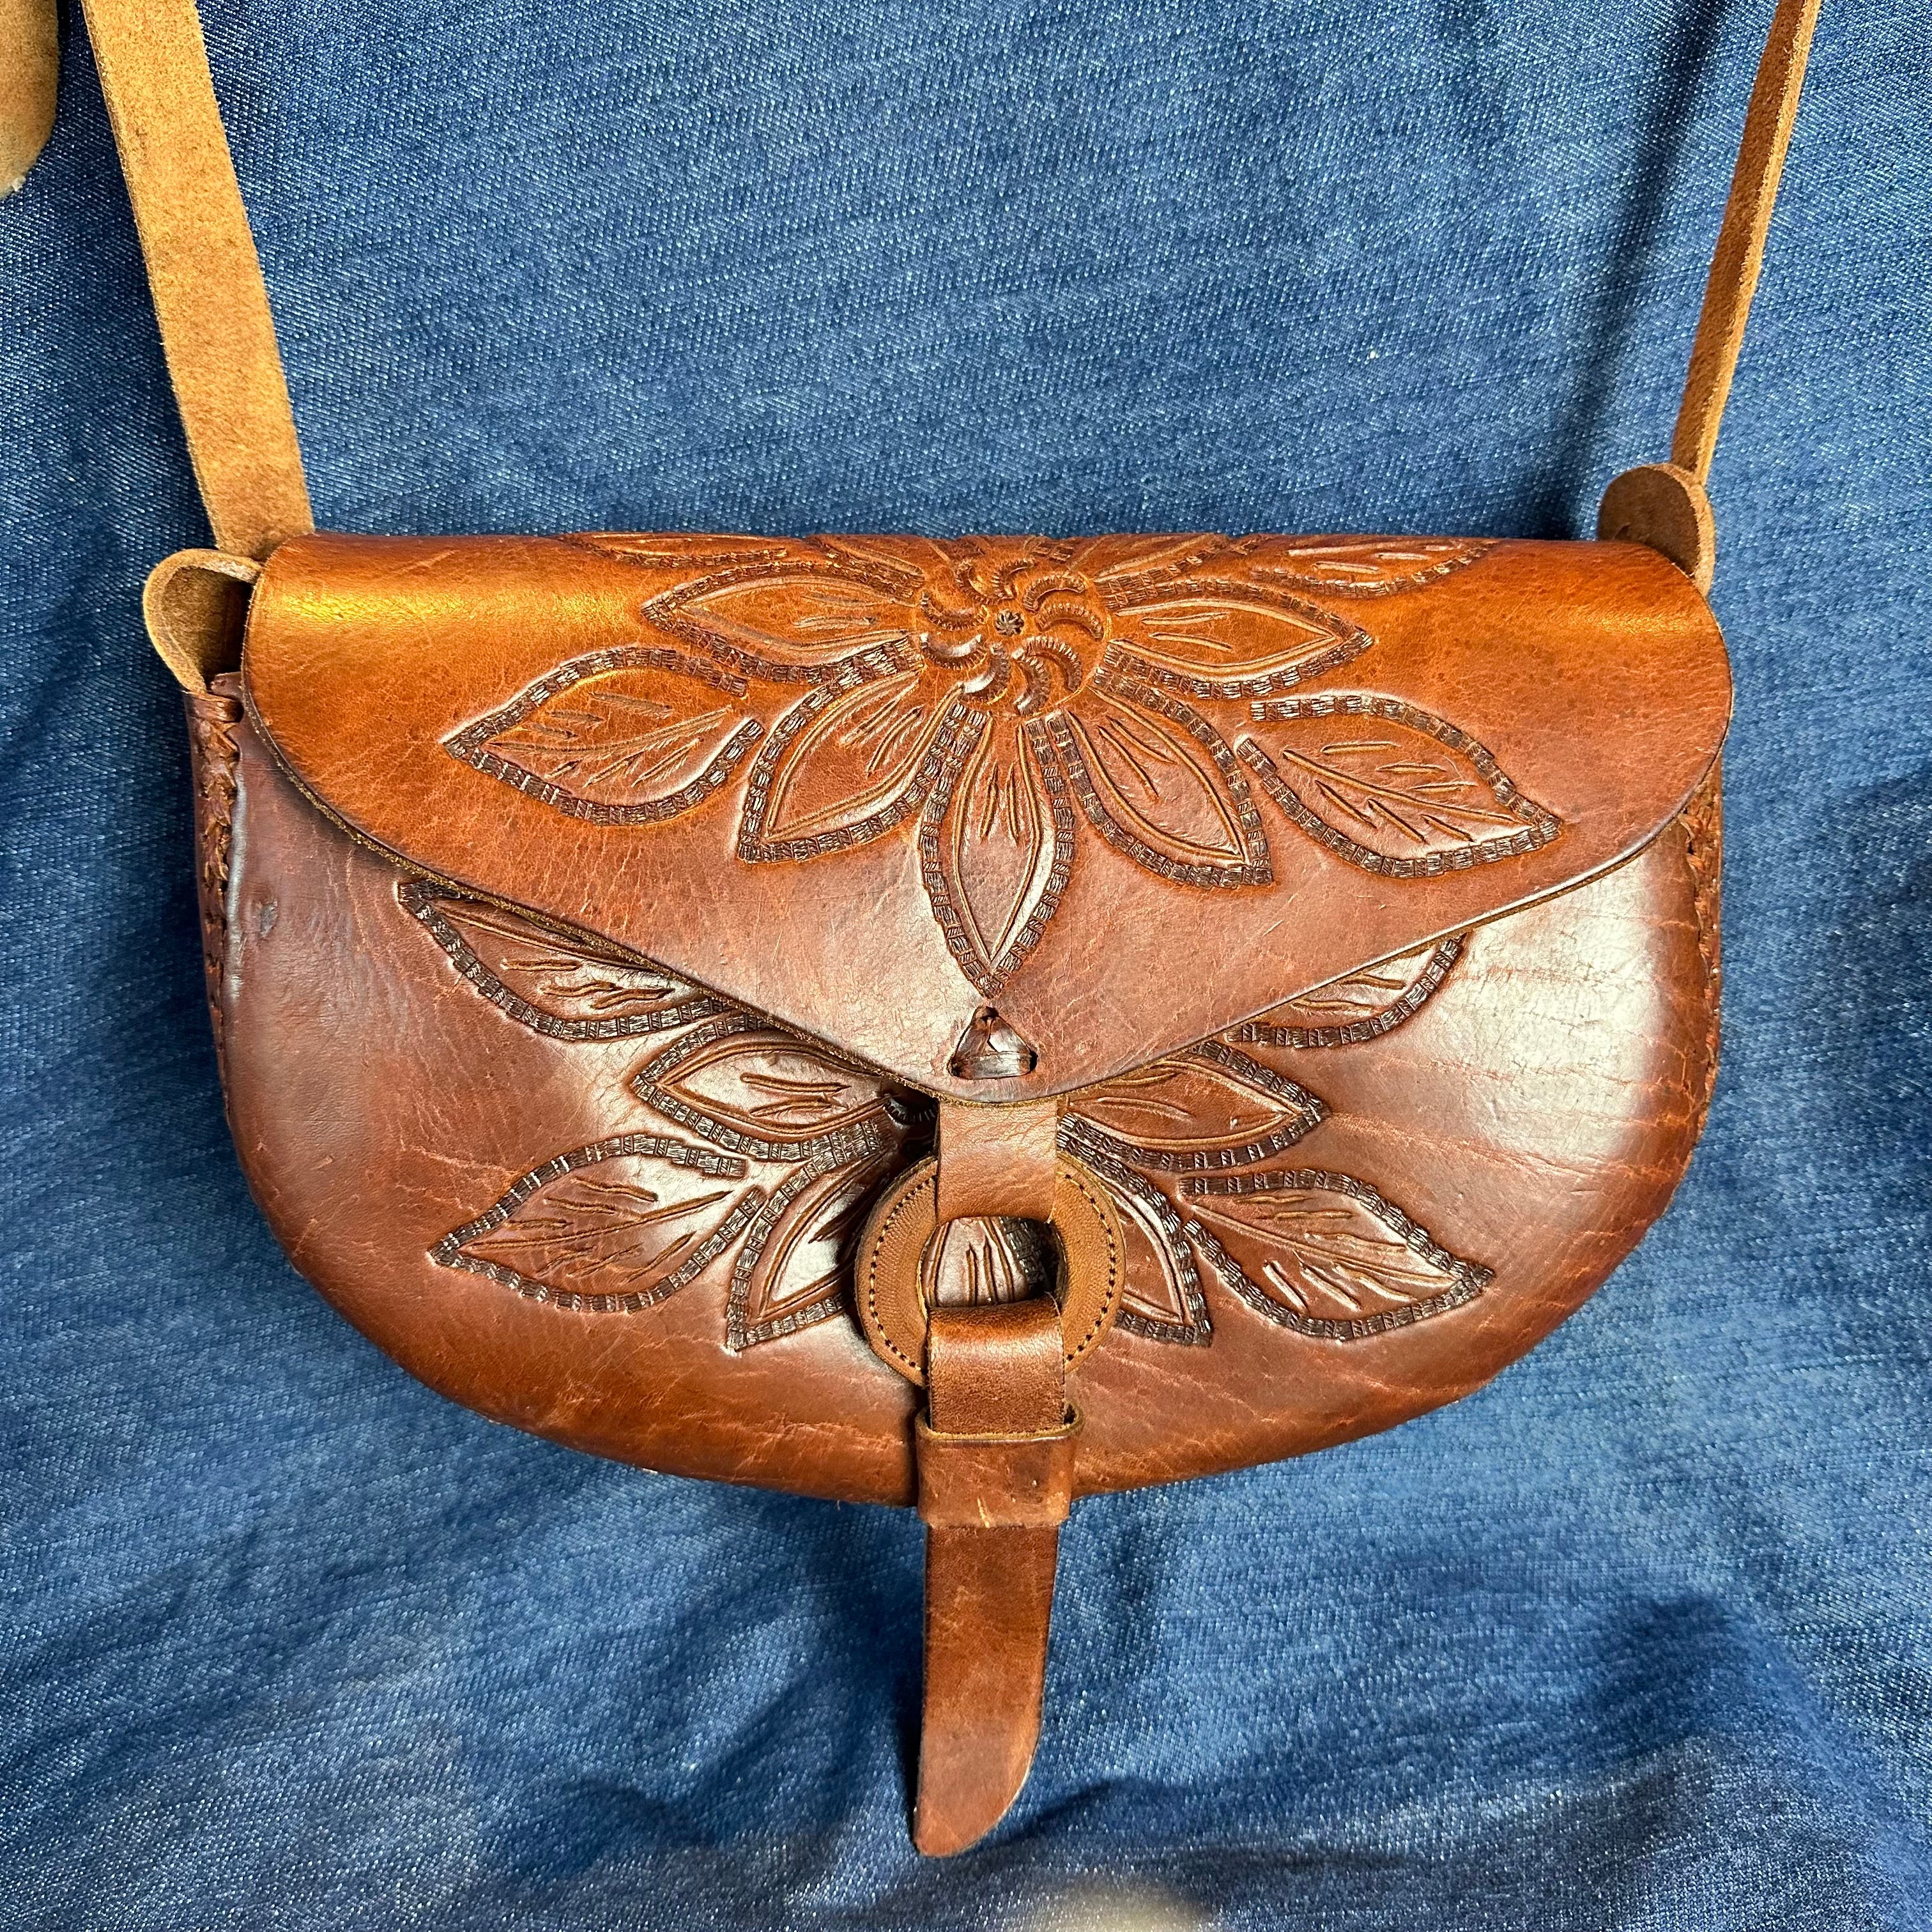 Tooled Leather Bag - Medium